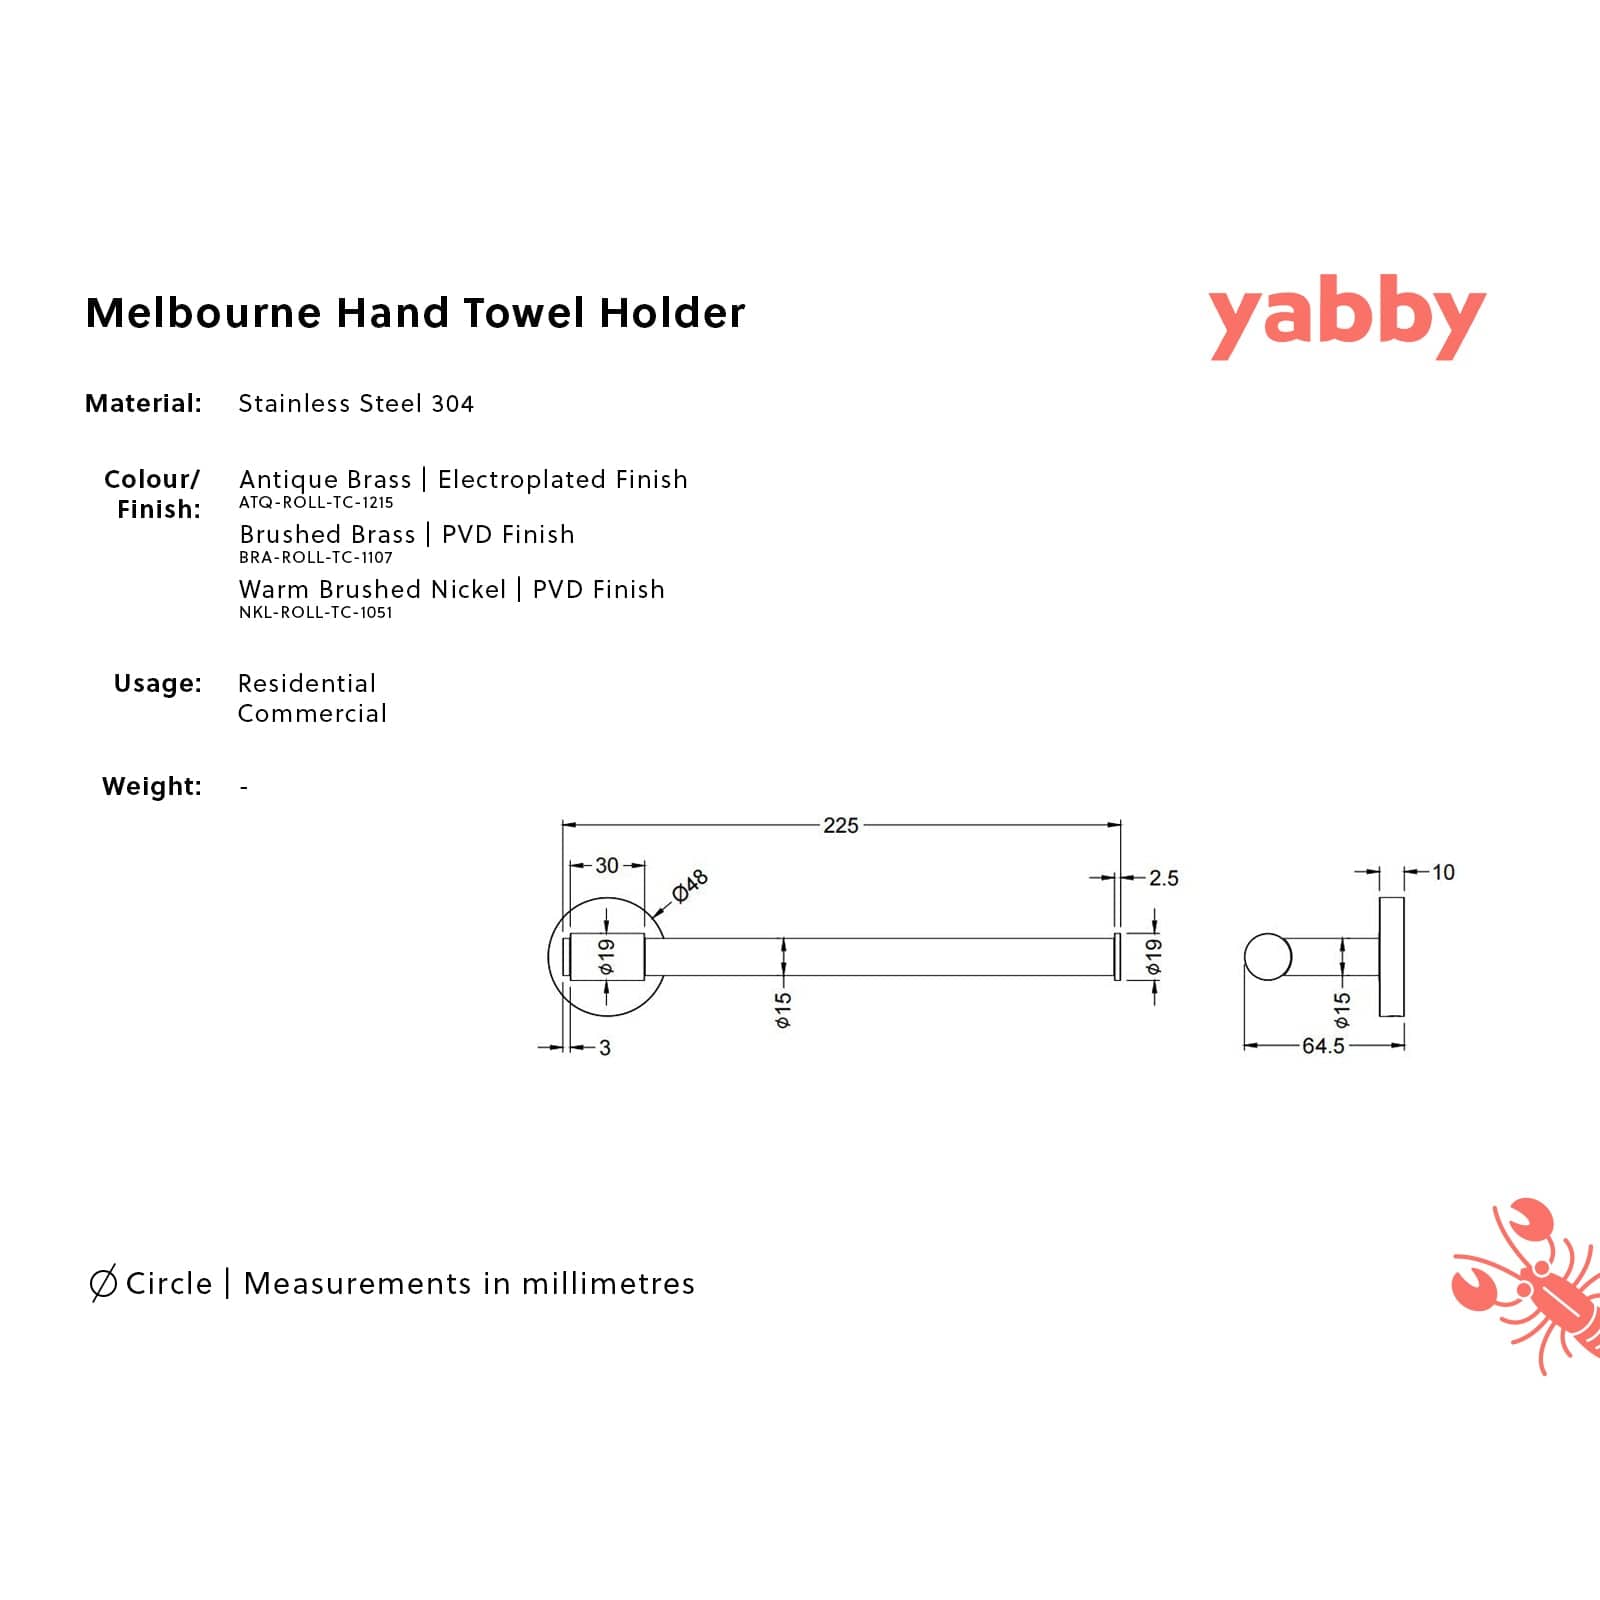 TileCloud TAPWARE Melbourne Hand Towel Holder Brushed Brass